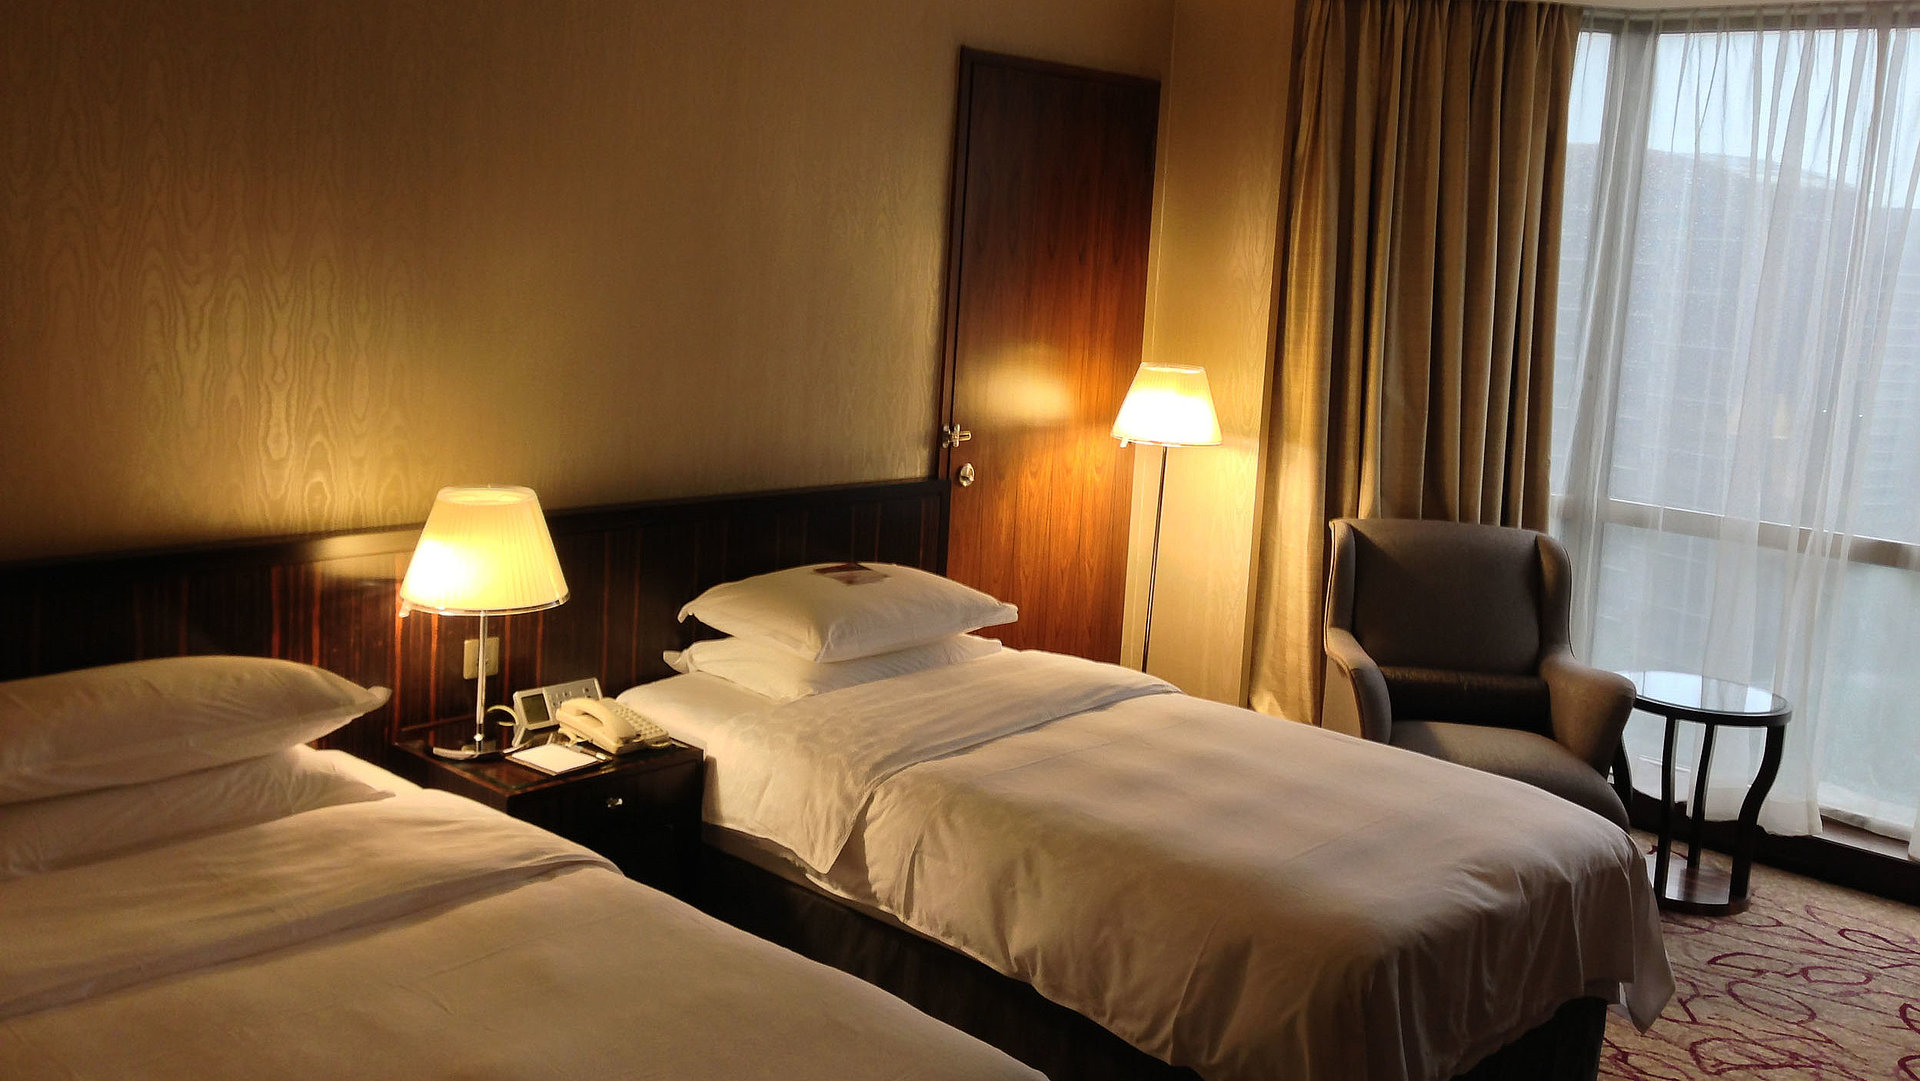 Hotels für Gruppen in Oberfranken - sehr ordentliches Hotelzimmer mit zwei Betten, warmer Nachtlampe und Gardinen